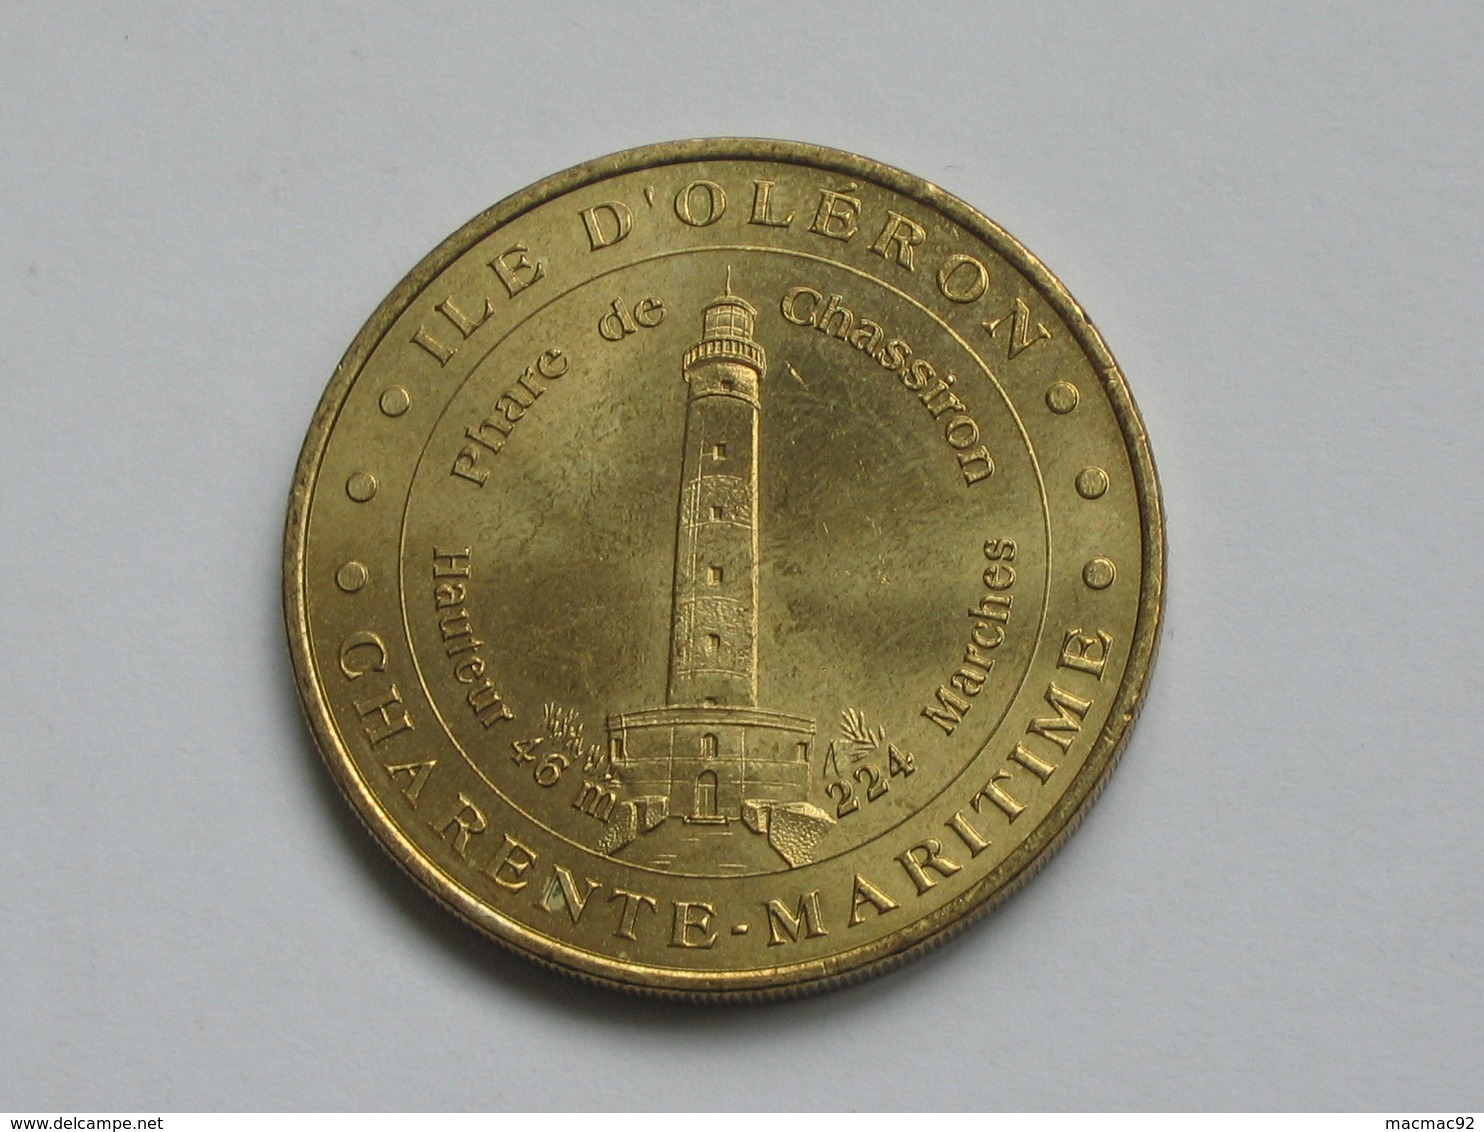 Monnaie De Paris 2001 - ILE D'OLERON - PHARE DE CHASSIRON - 46 M -224 Marches   **** EN ACHAT IMMEDIAT *** - 2001